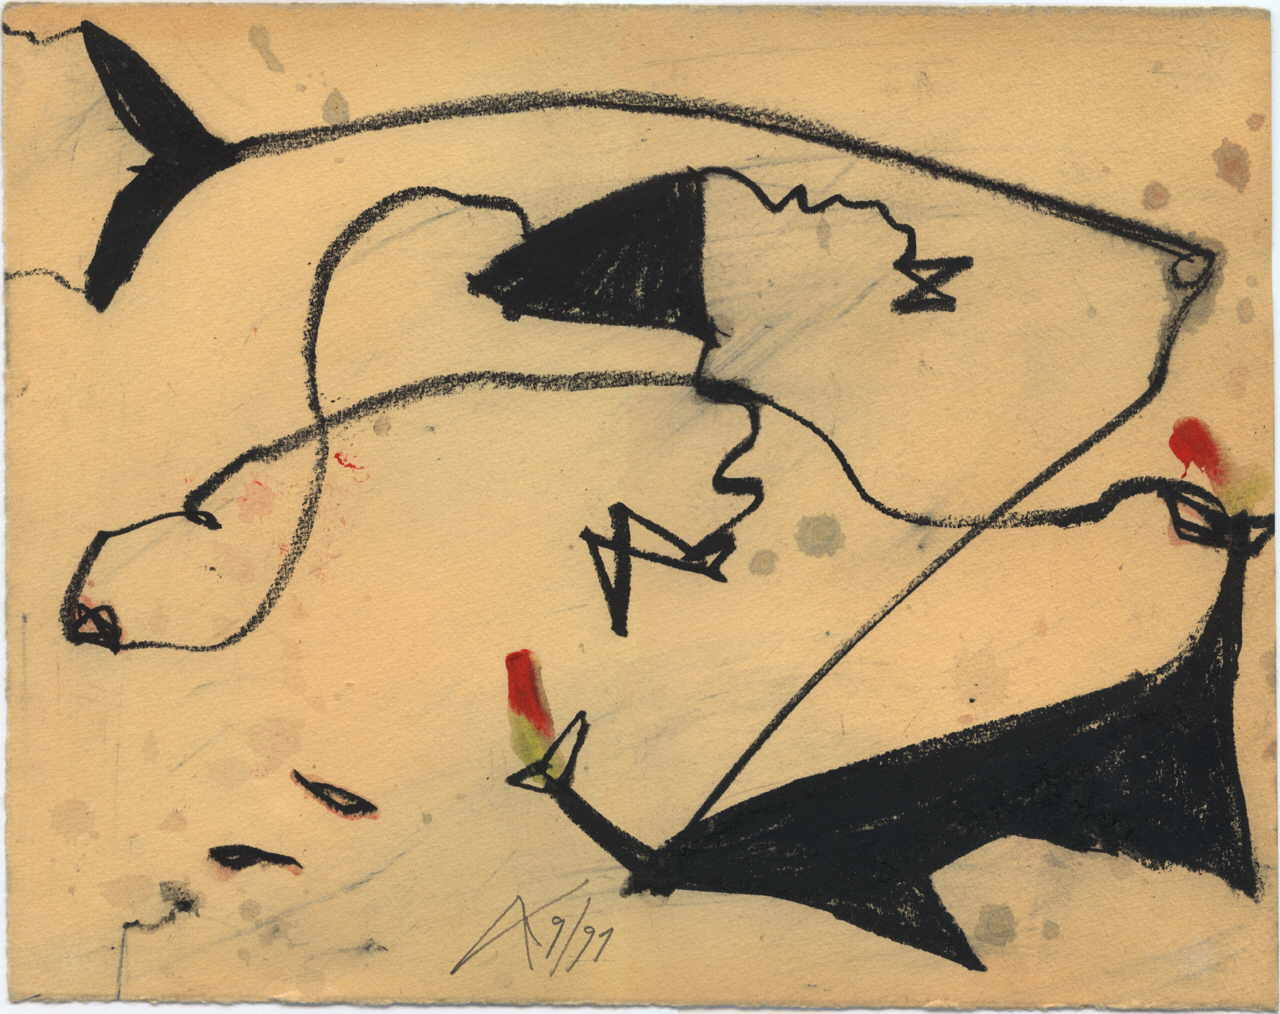 Ak Anatole 
aus "Drachenfliegen", 1991
mixed media / paper
27 x 33 cm